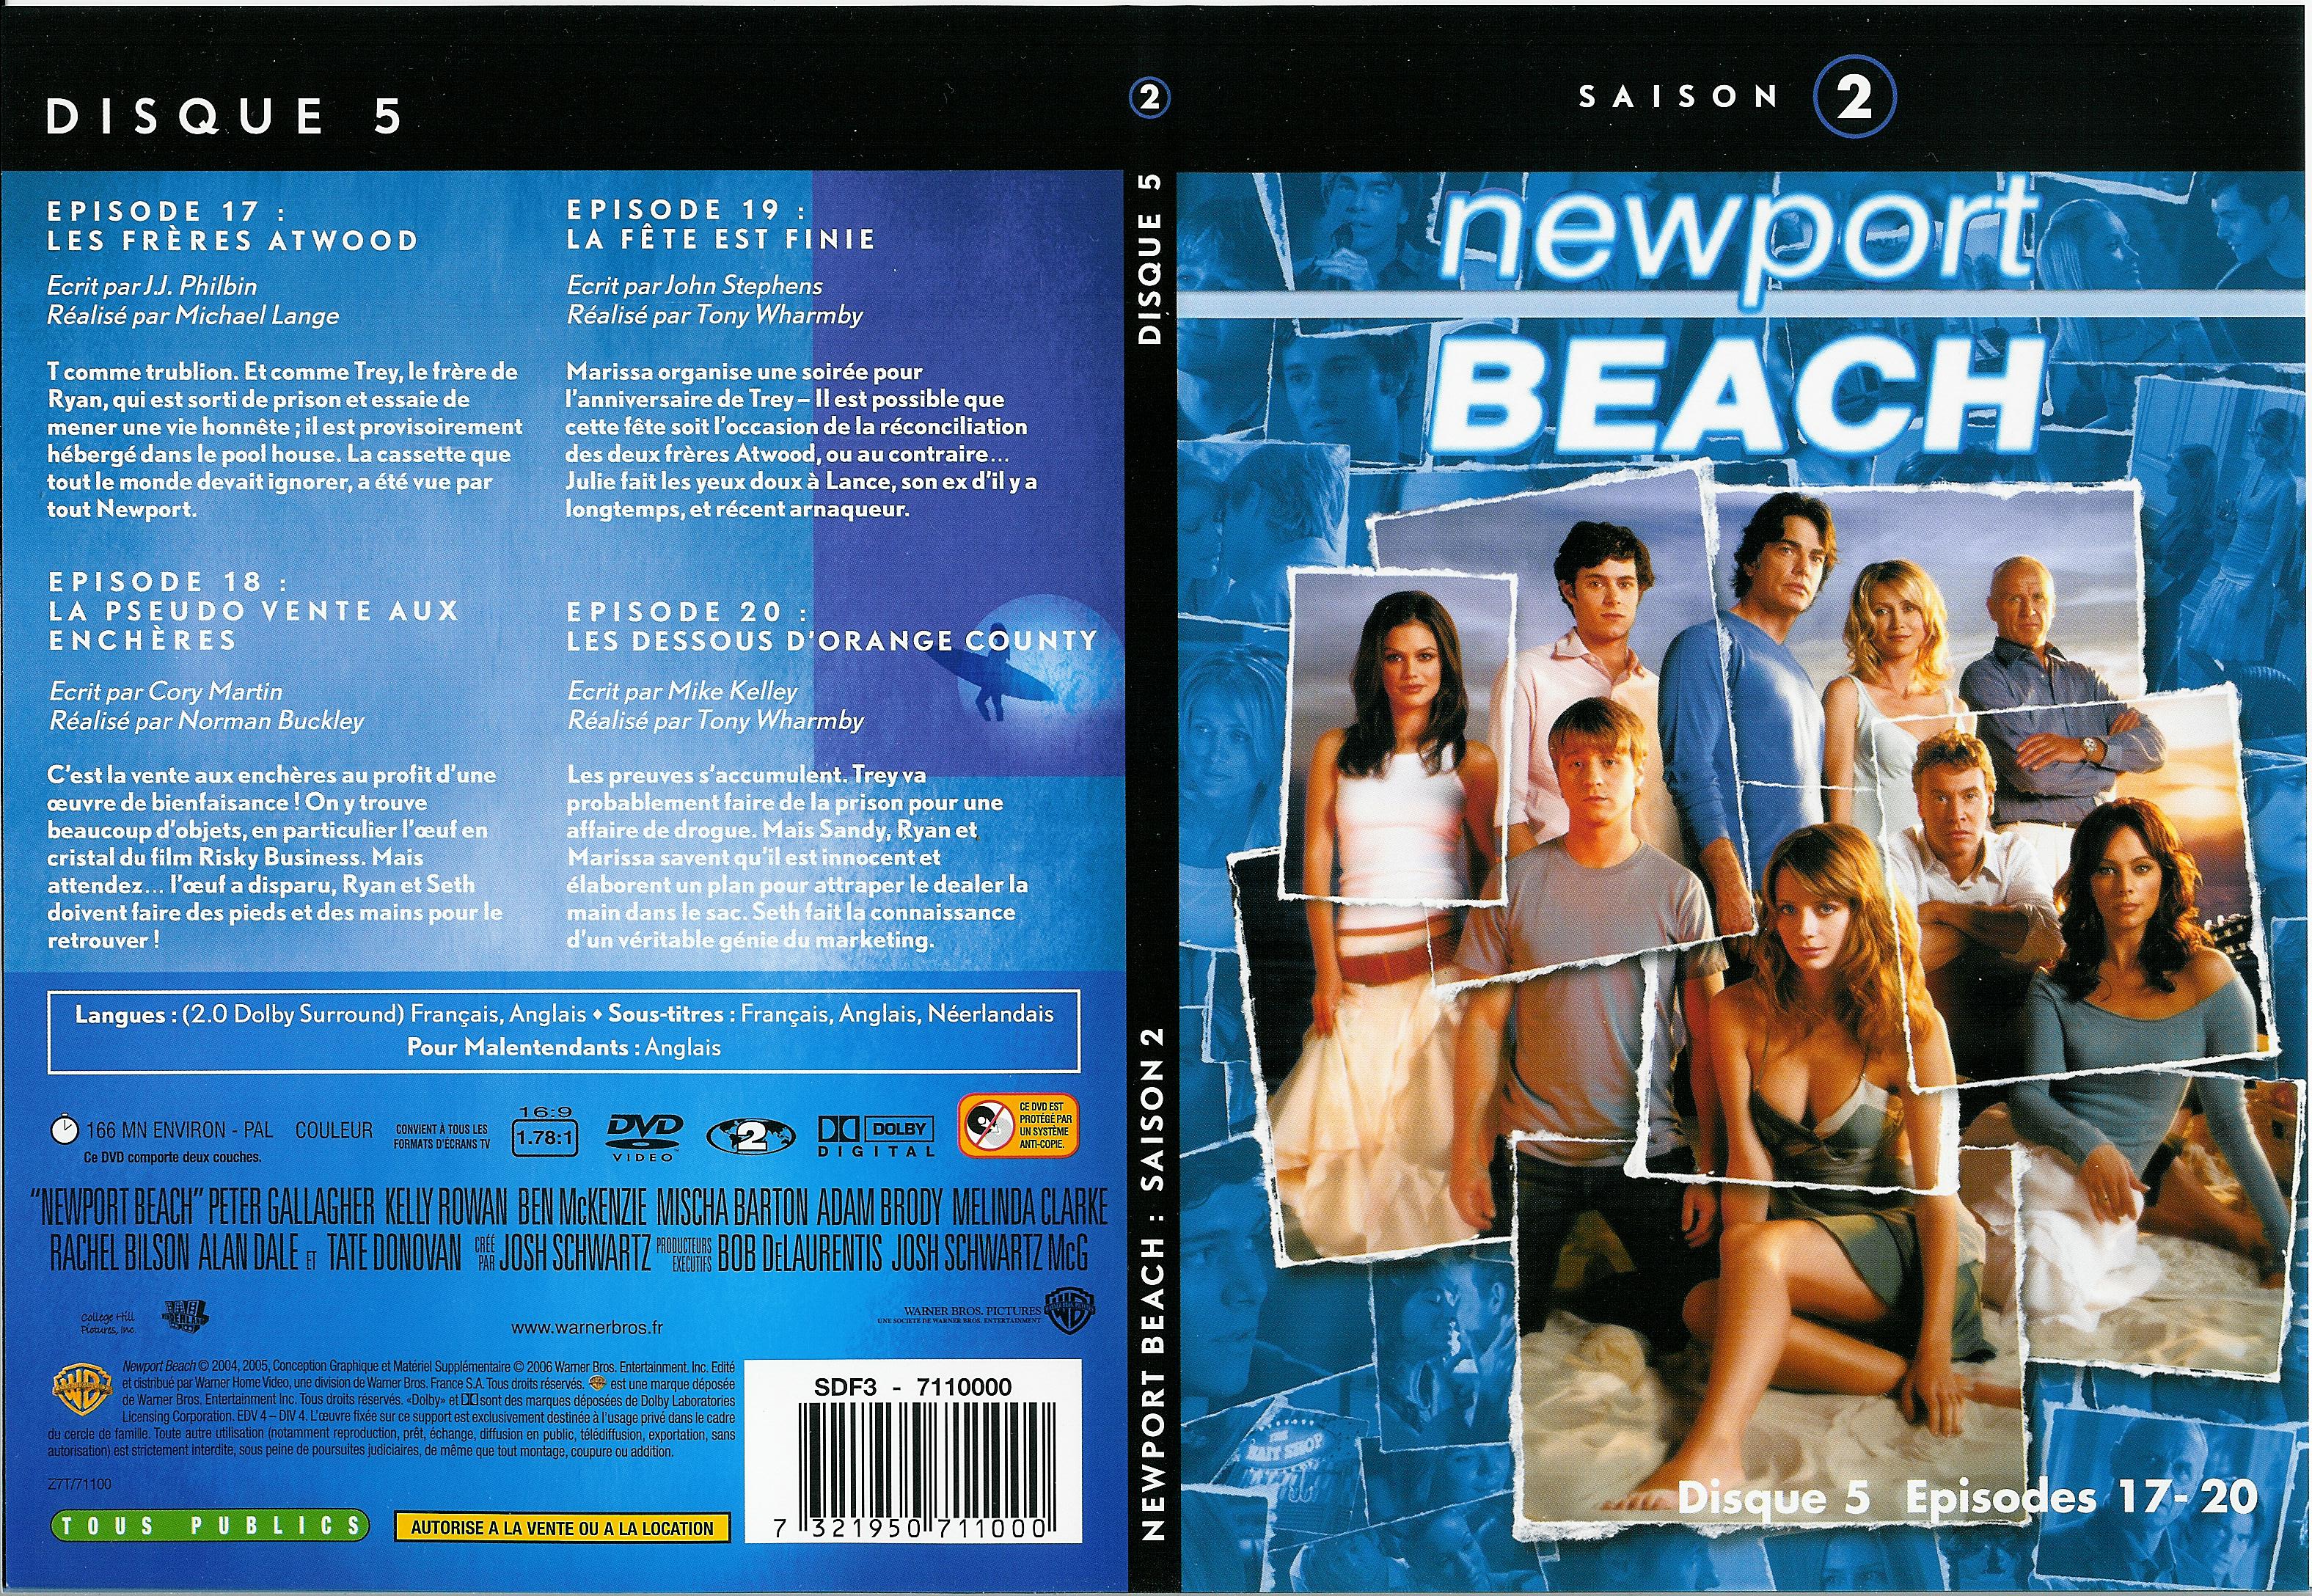 Jaquette DVD Newport Beach saison 2 vol 5